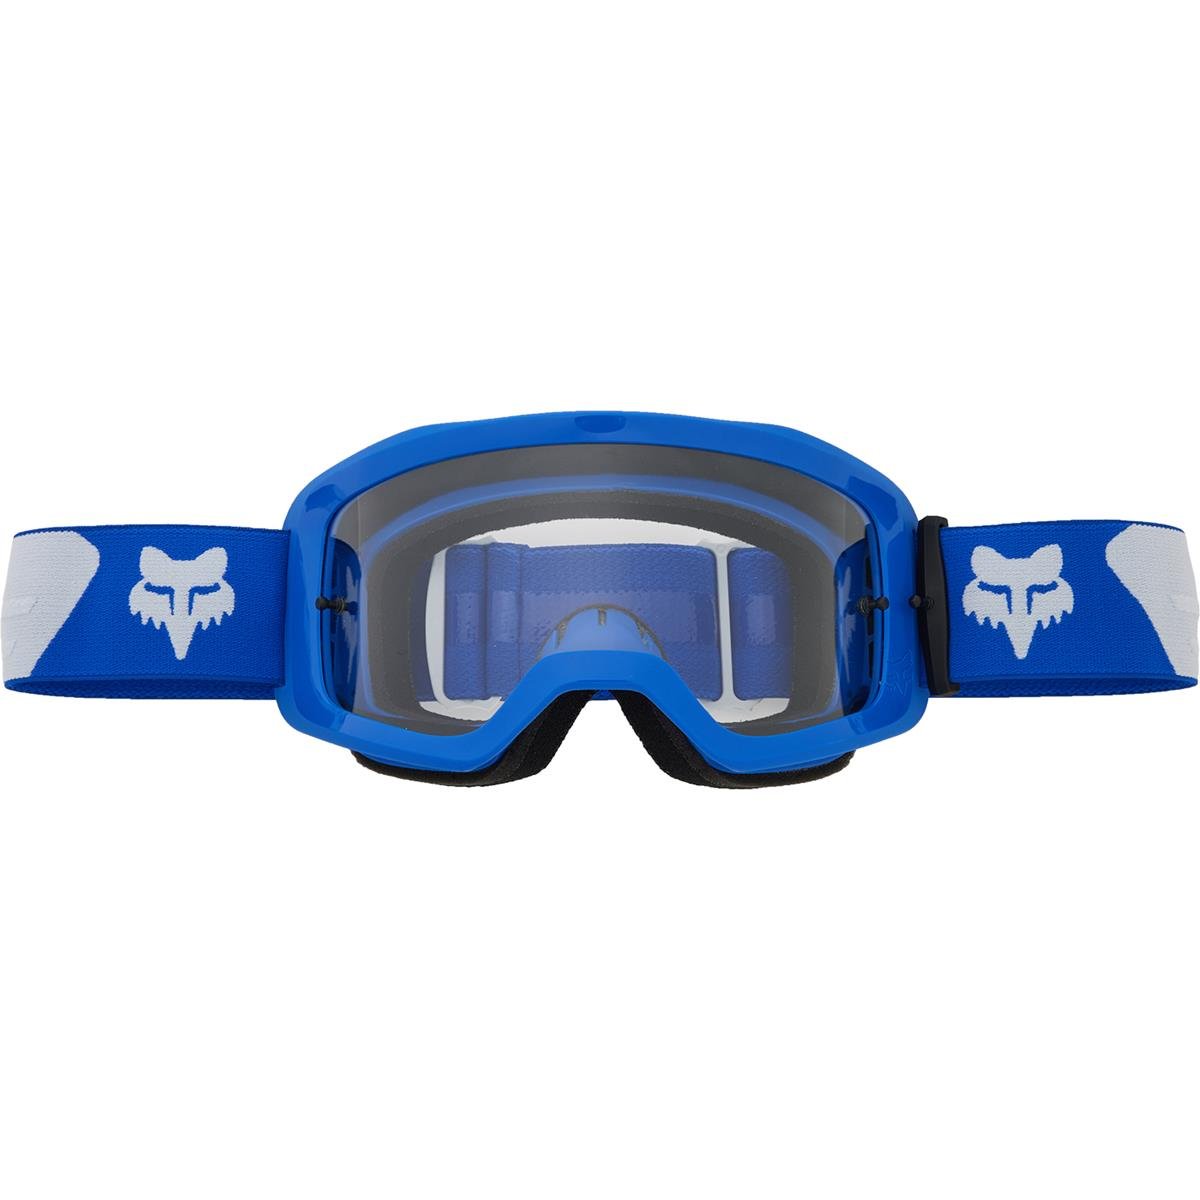 Fox Goggle Main Core - Blue/White, Non-Mirrored